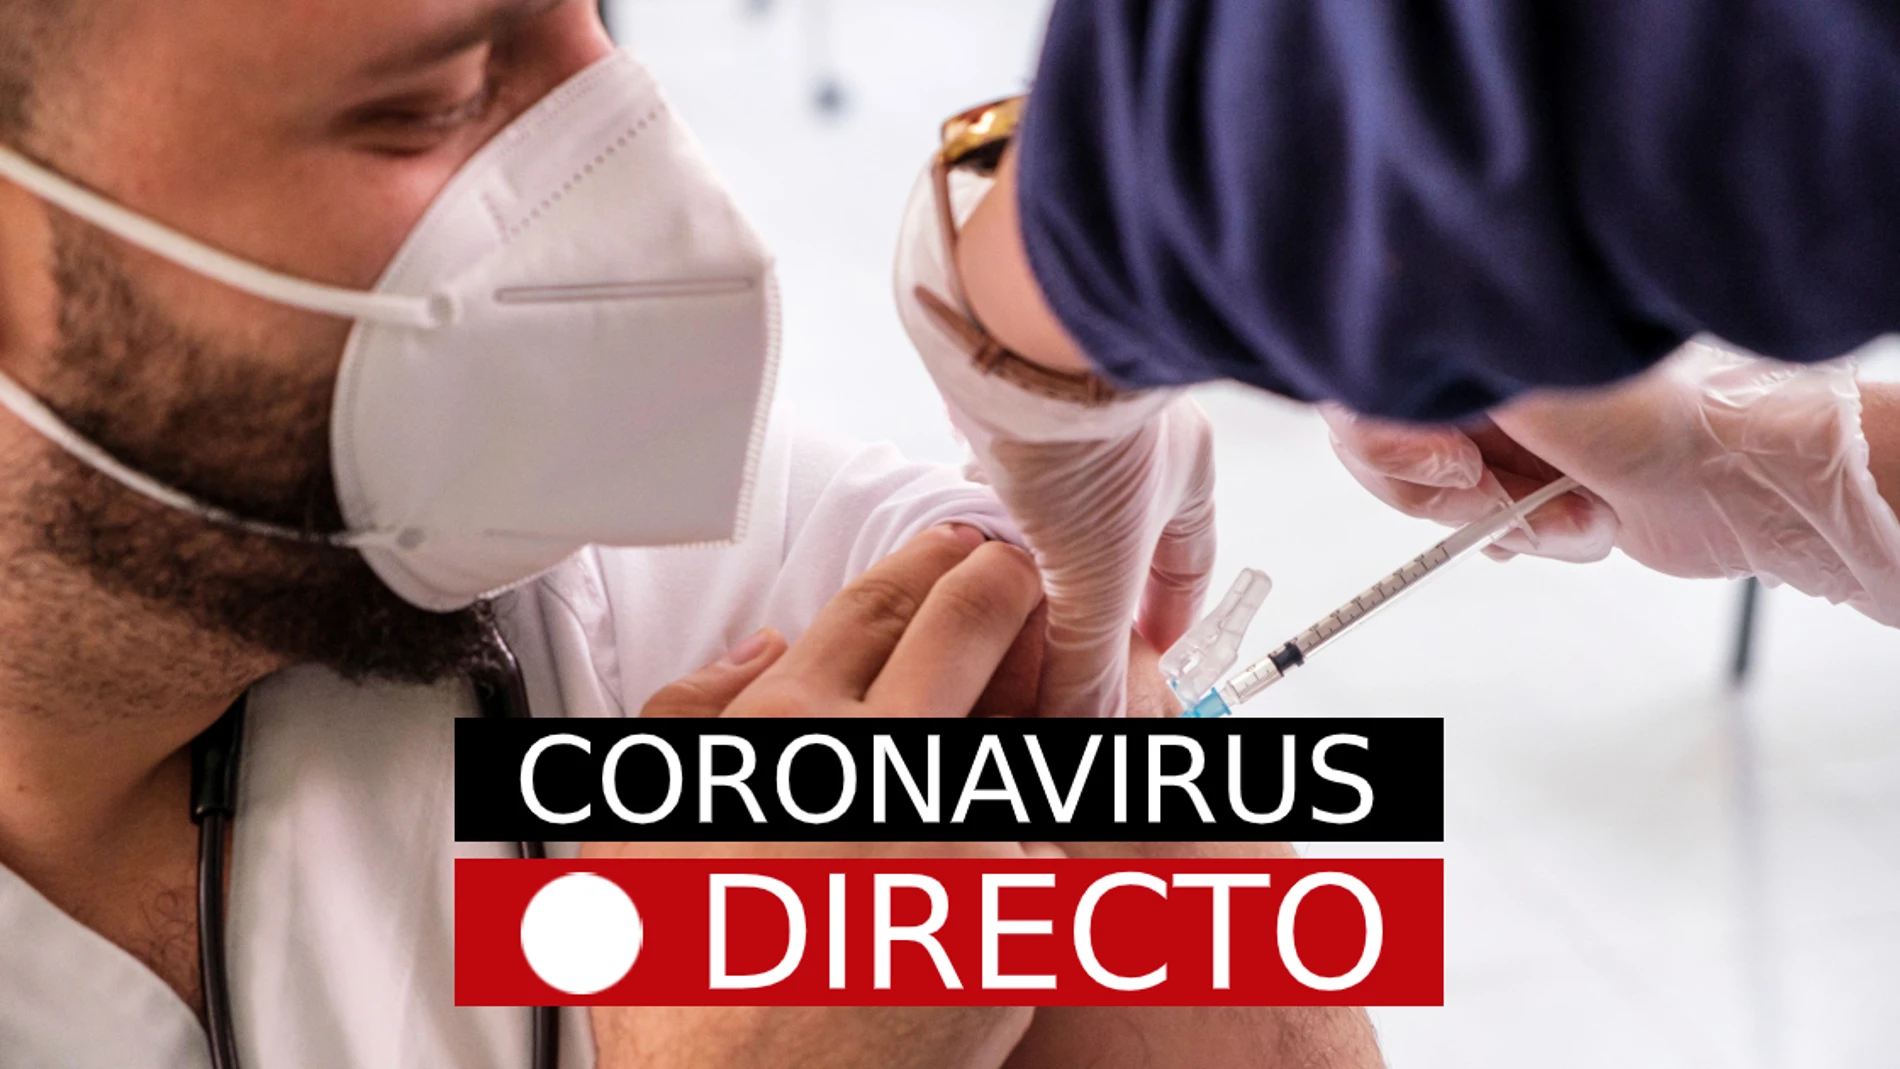 Coronavirus España, hoy | Últimas noticias del COVID-19, cierres perimetrales y restricciones, en directo